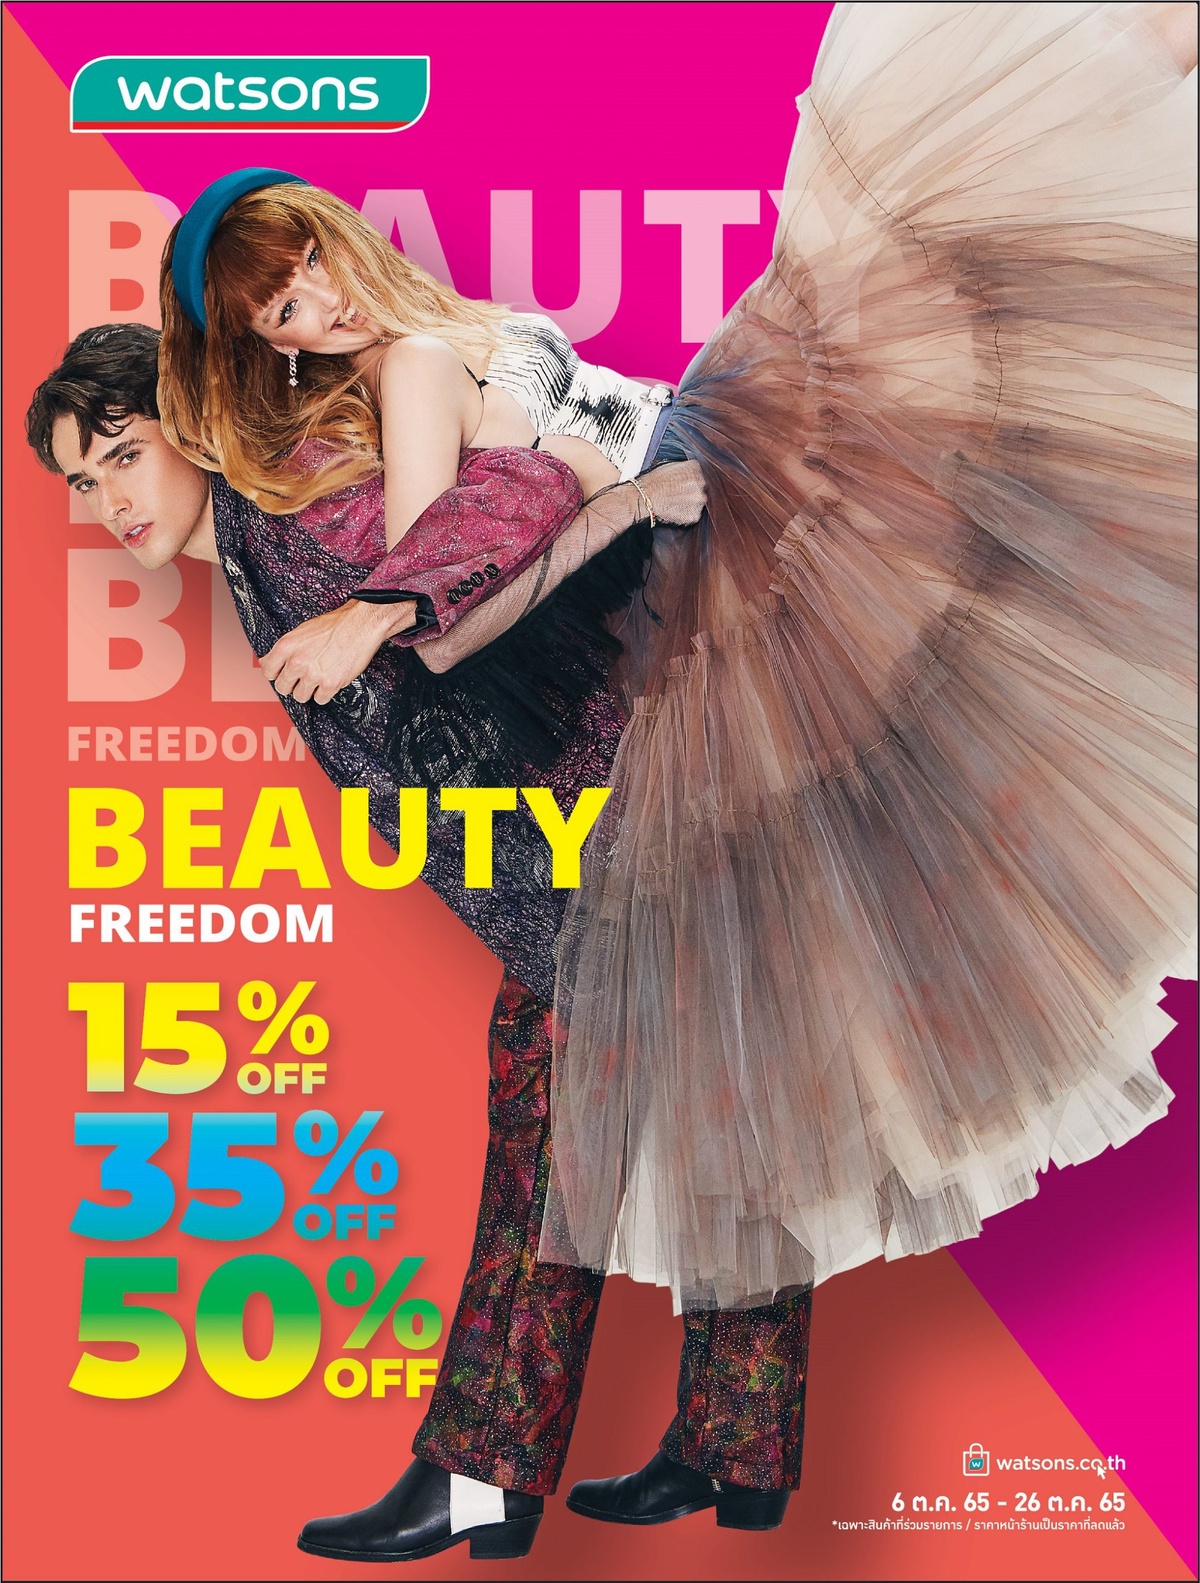 วัตสันจัดโปรฯ Beauty Freedom เลือกชอปตามใจสินค้าลดสูงสุดถึง 50%